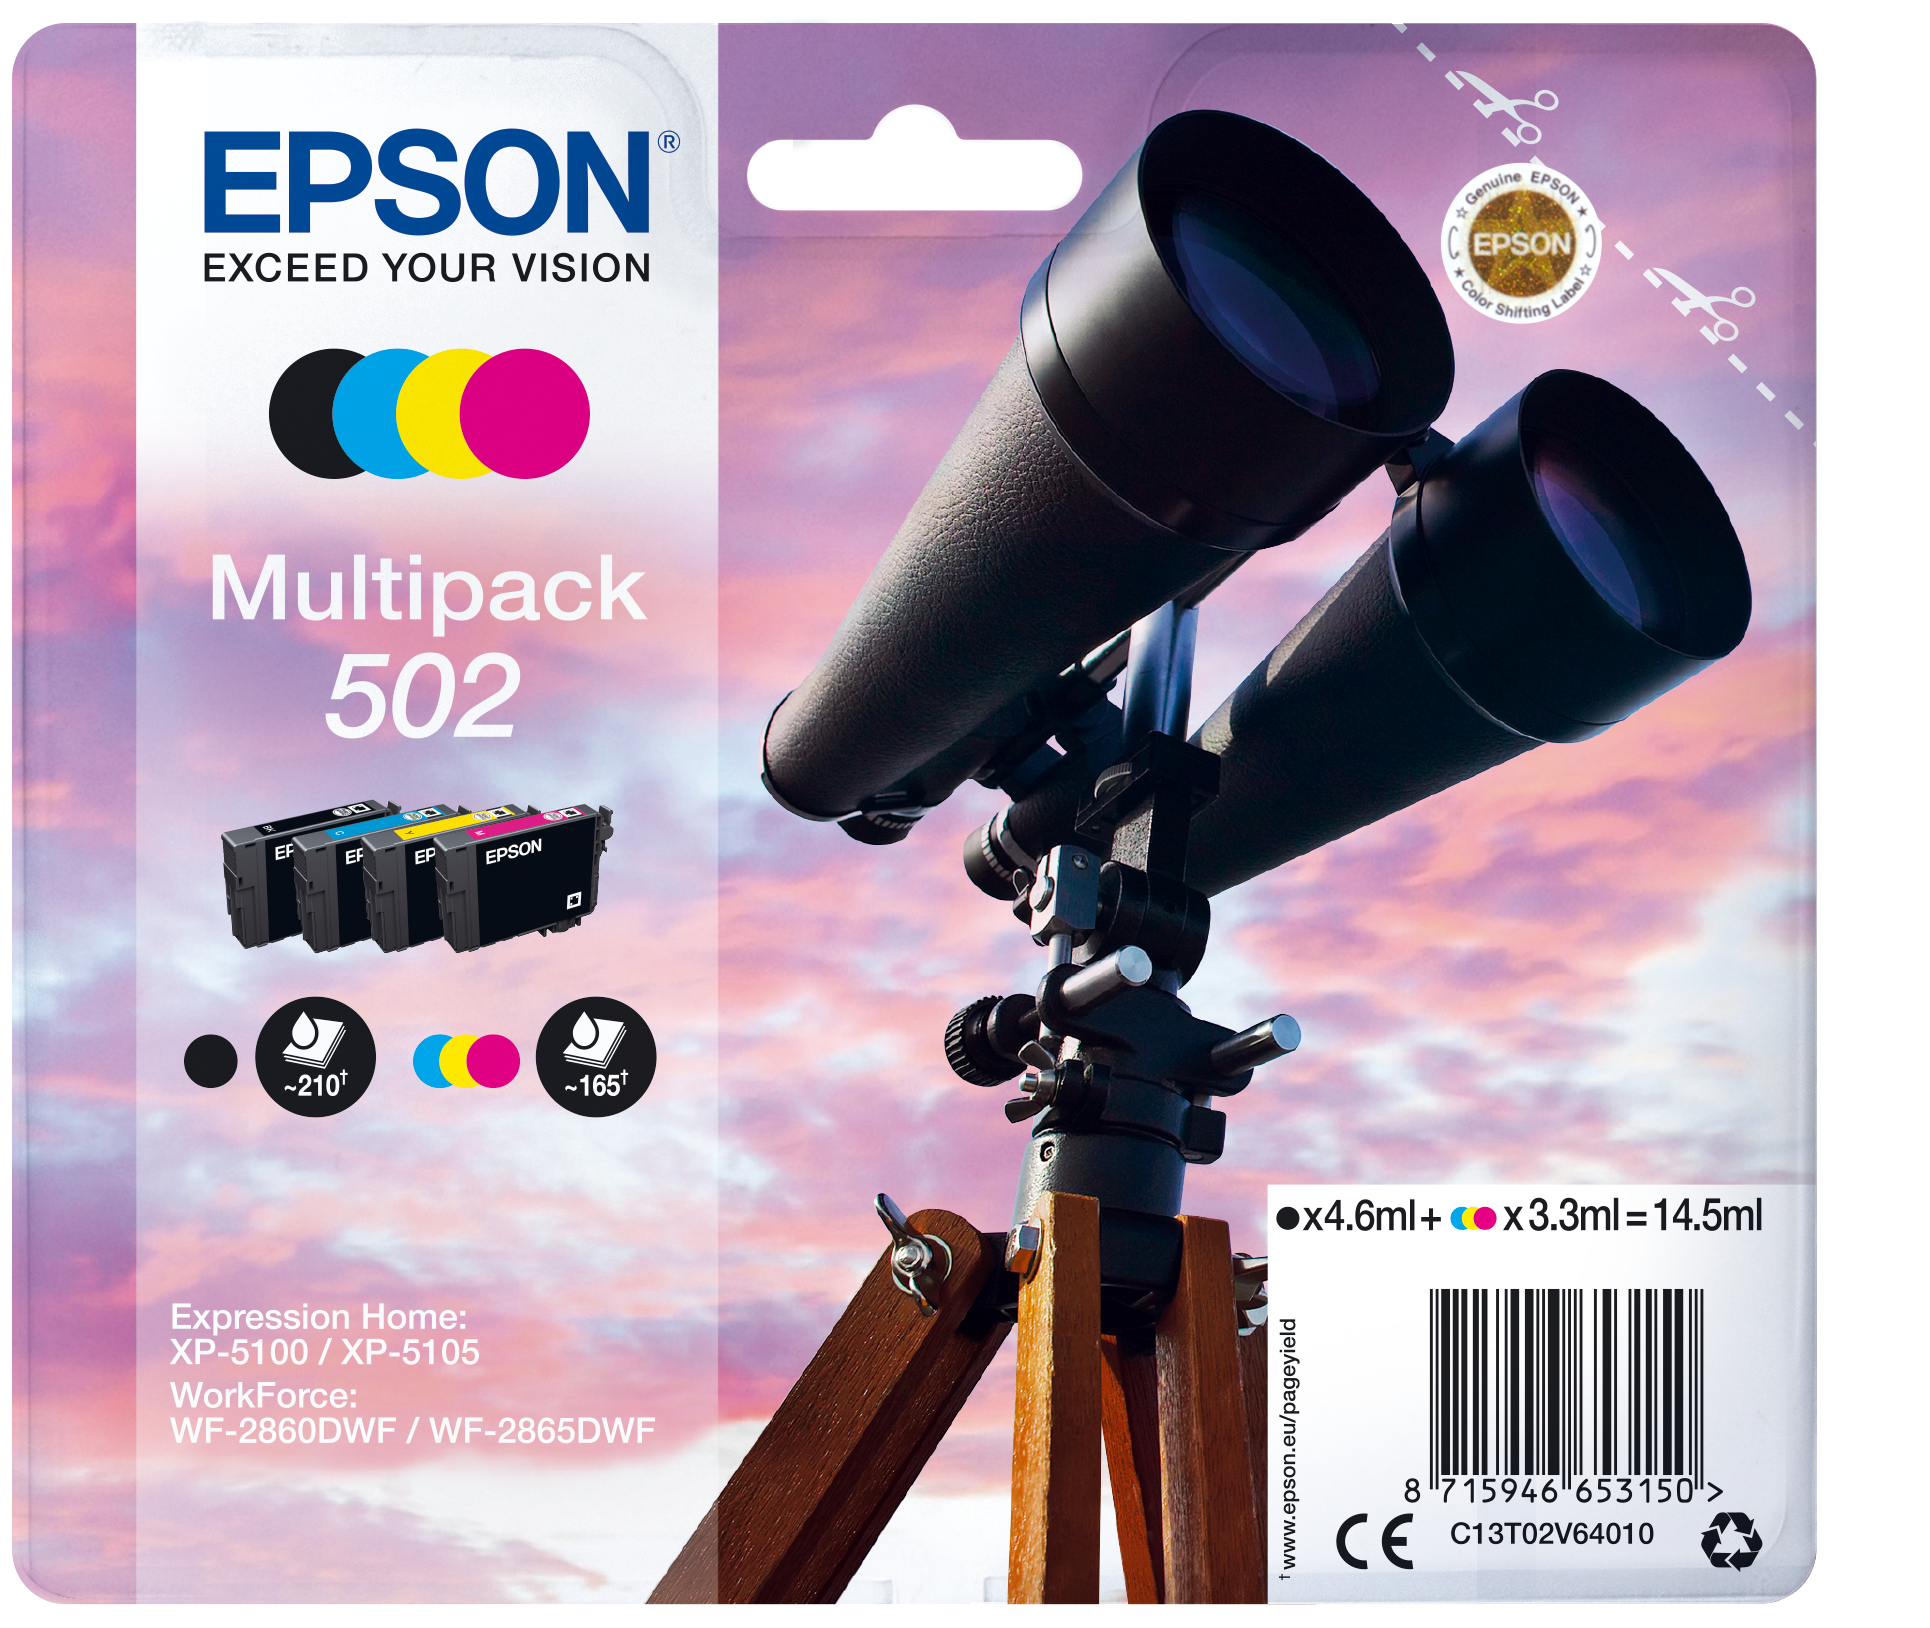 Epson inkt, 502, Verrekijker, BK/C/M/Y Multipack